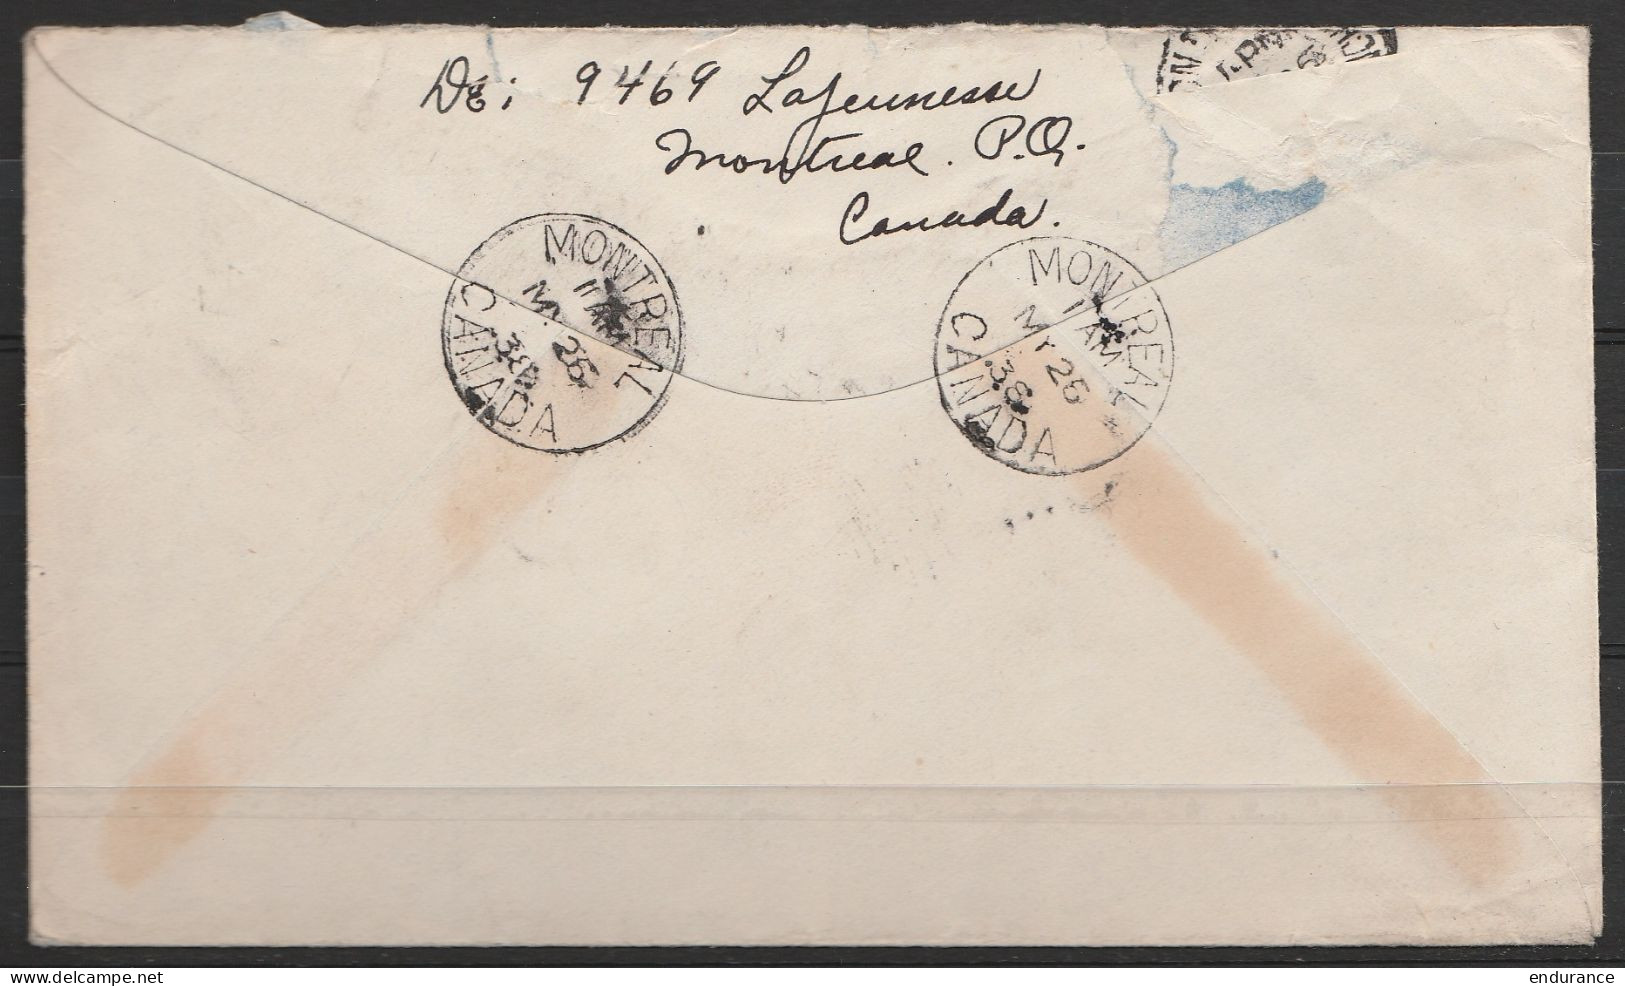 Canada - L. Affr. 15c (multicolore !) Càd "MONTREAL/26 MY 1938" Pour MELLERY (Villers-la-Ville) - Briefe U. Dokumente